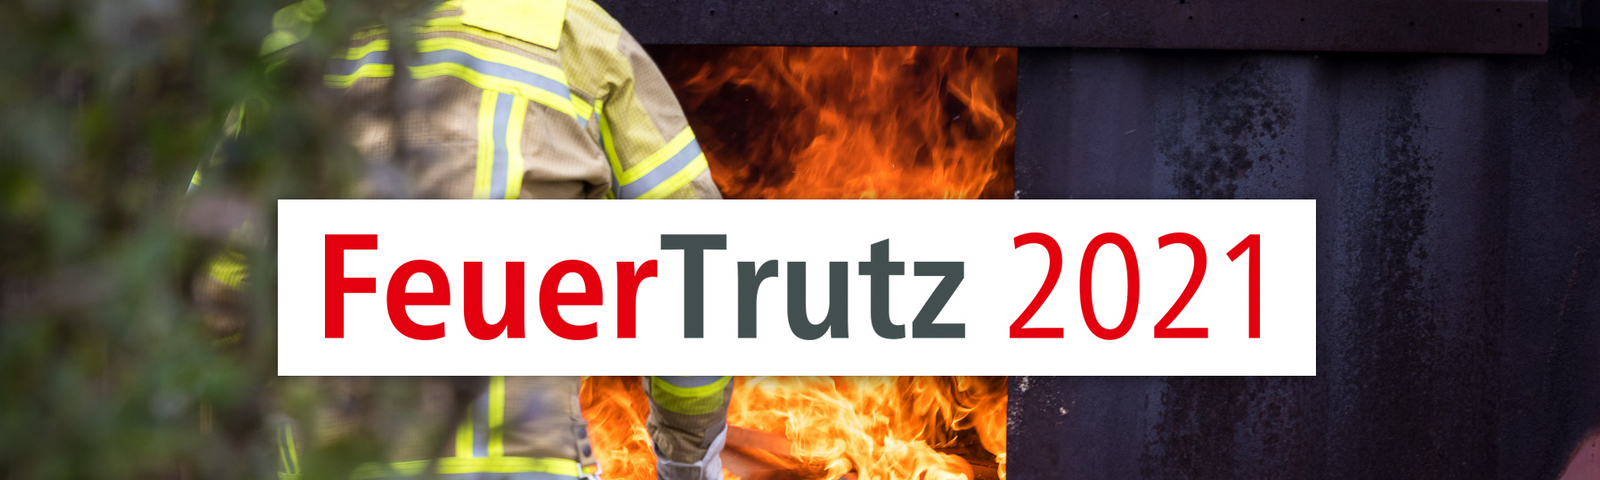 Feuertrutz 2021